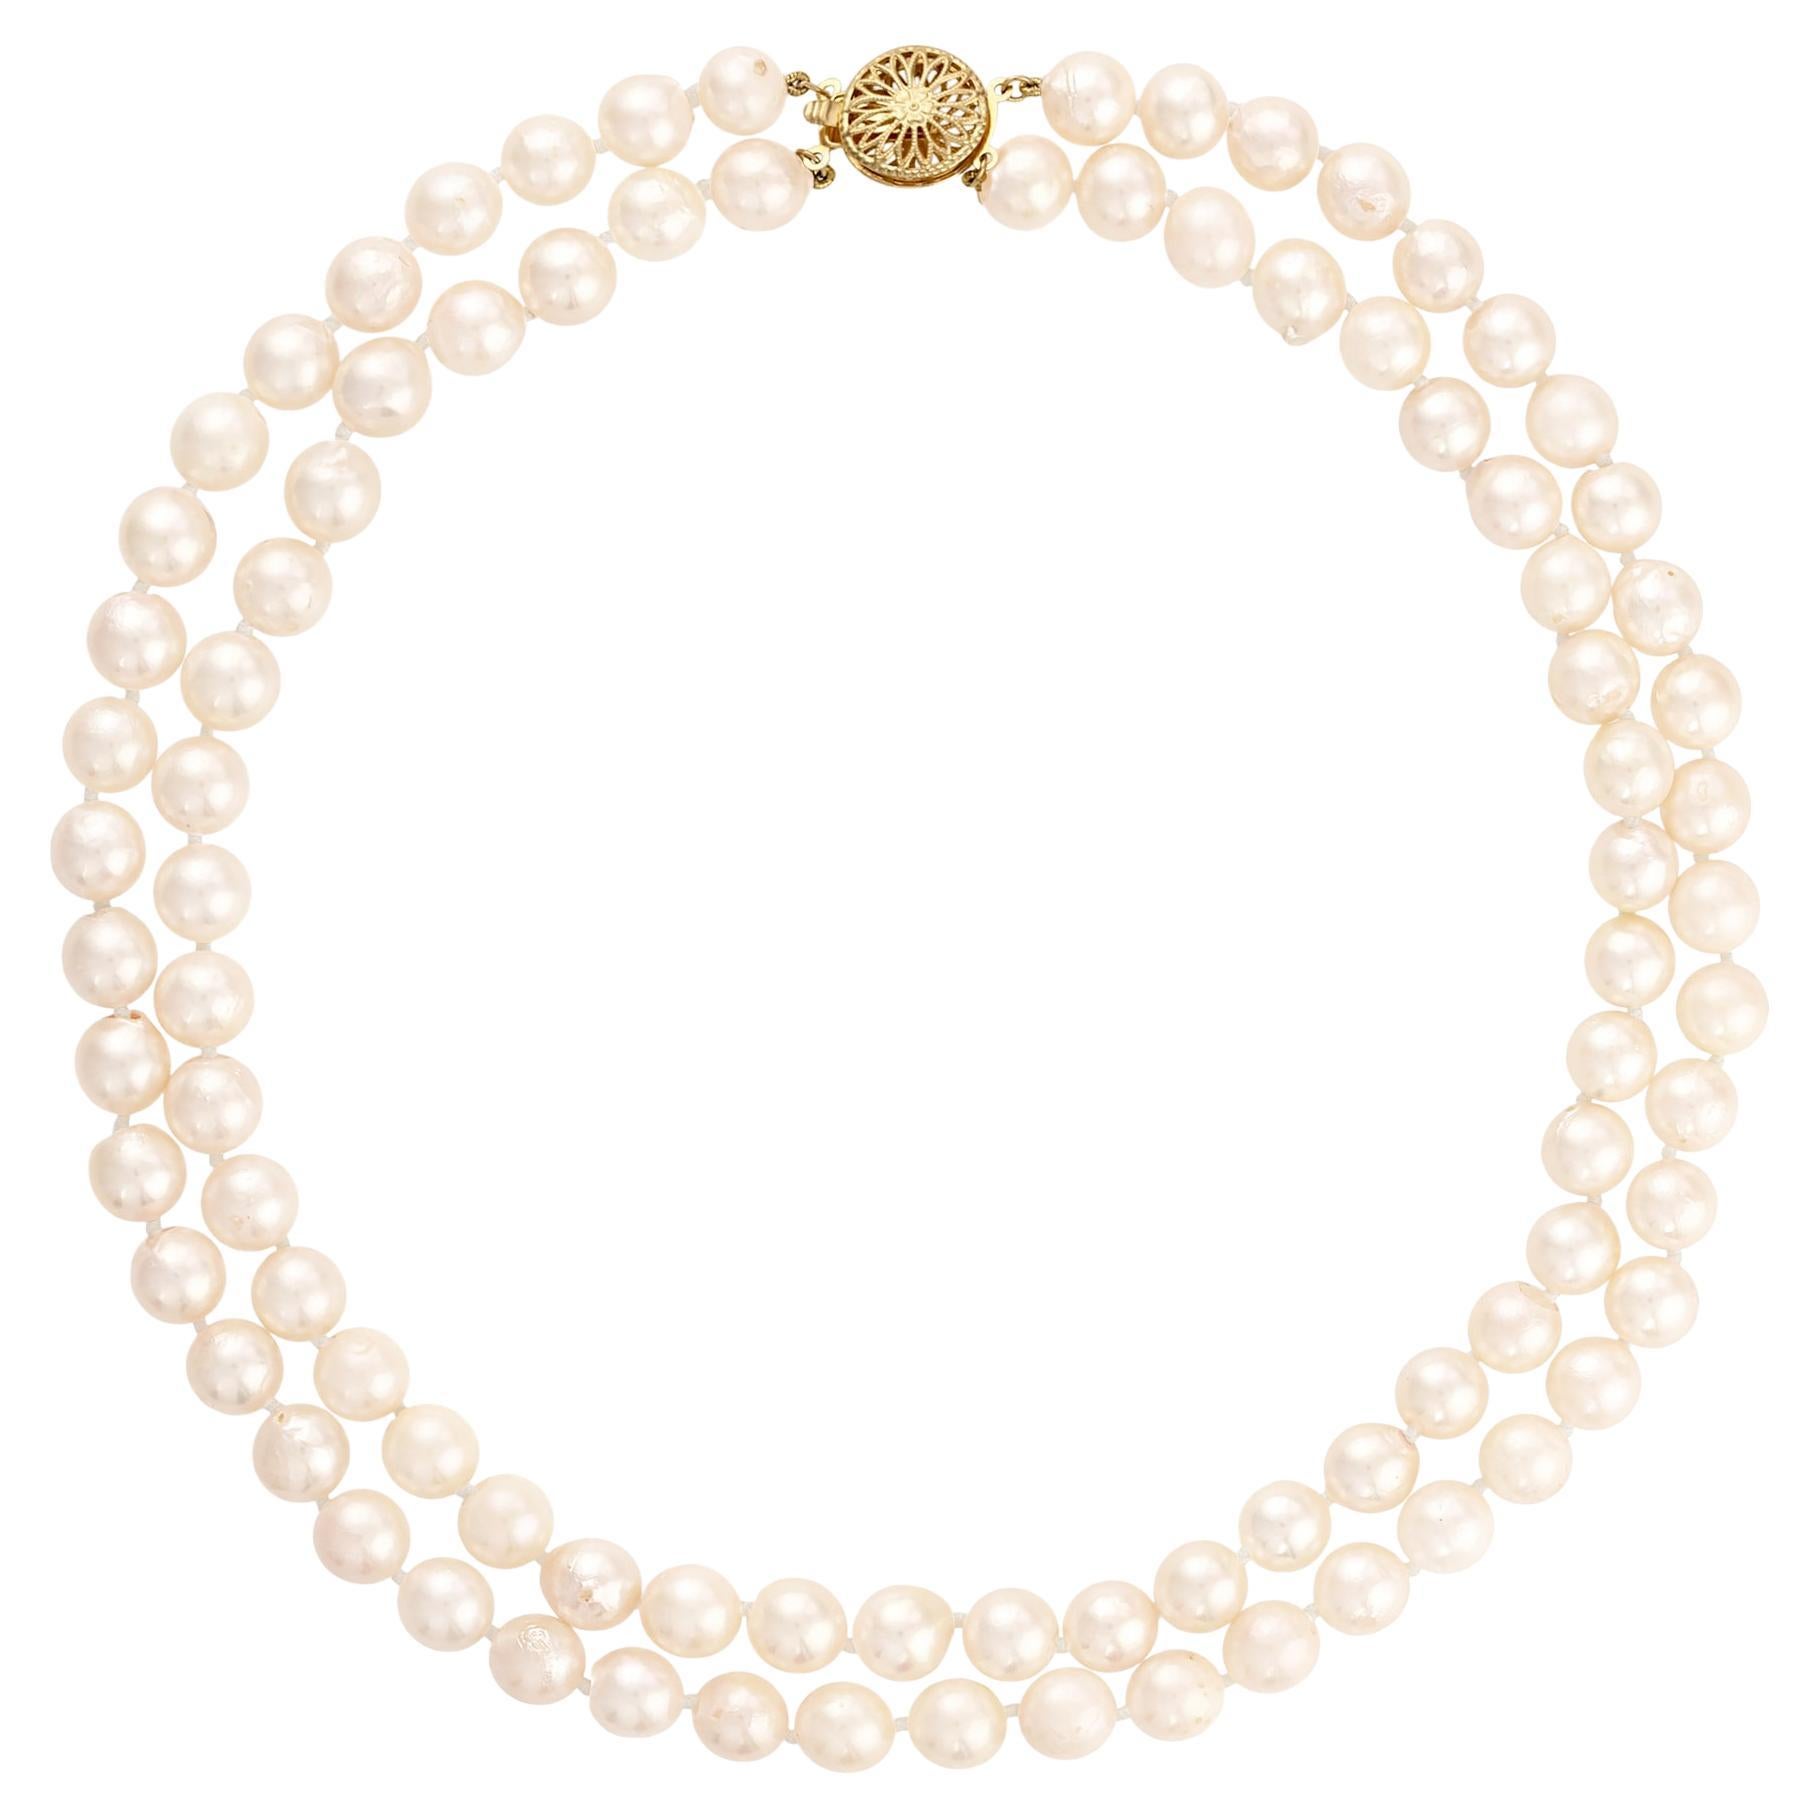 Classic perle de culture japonaise blanche double brin collier vintage 14k YG